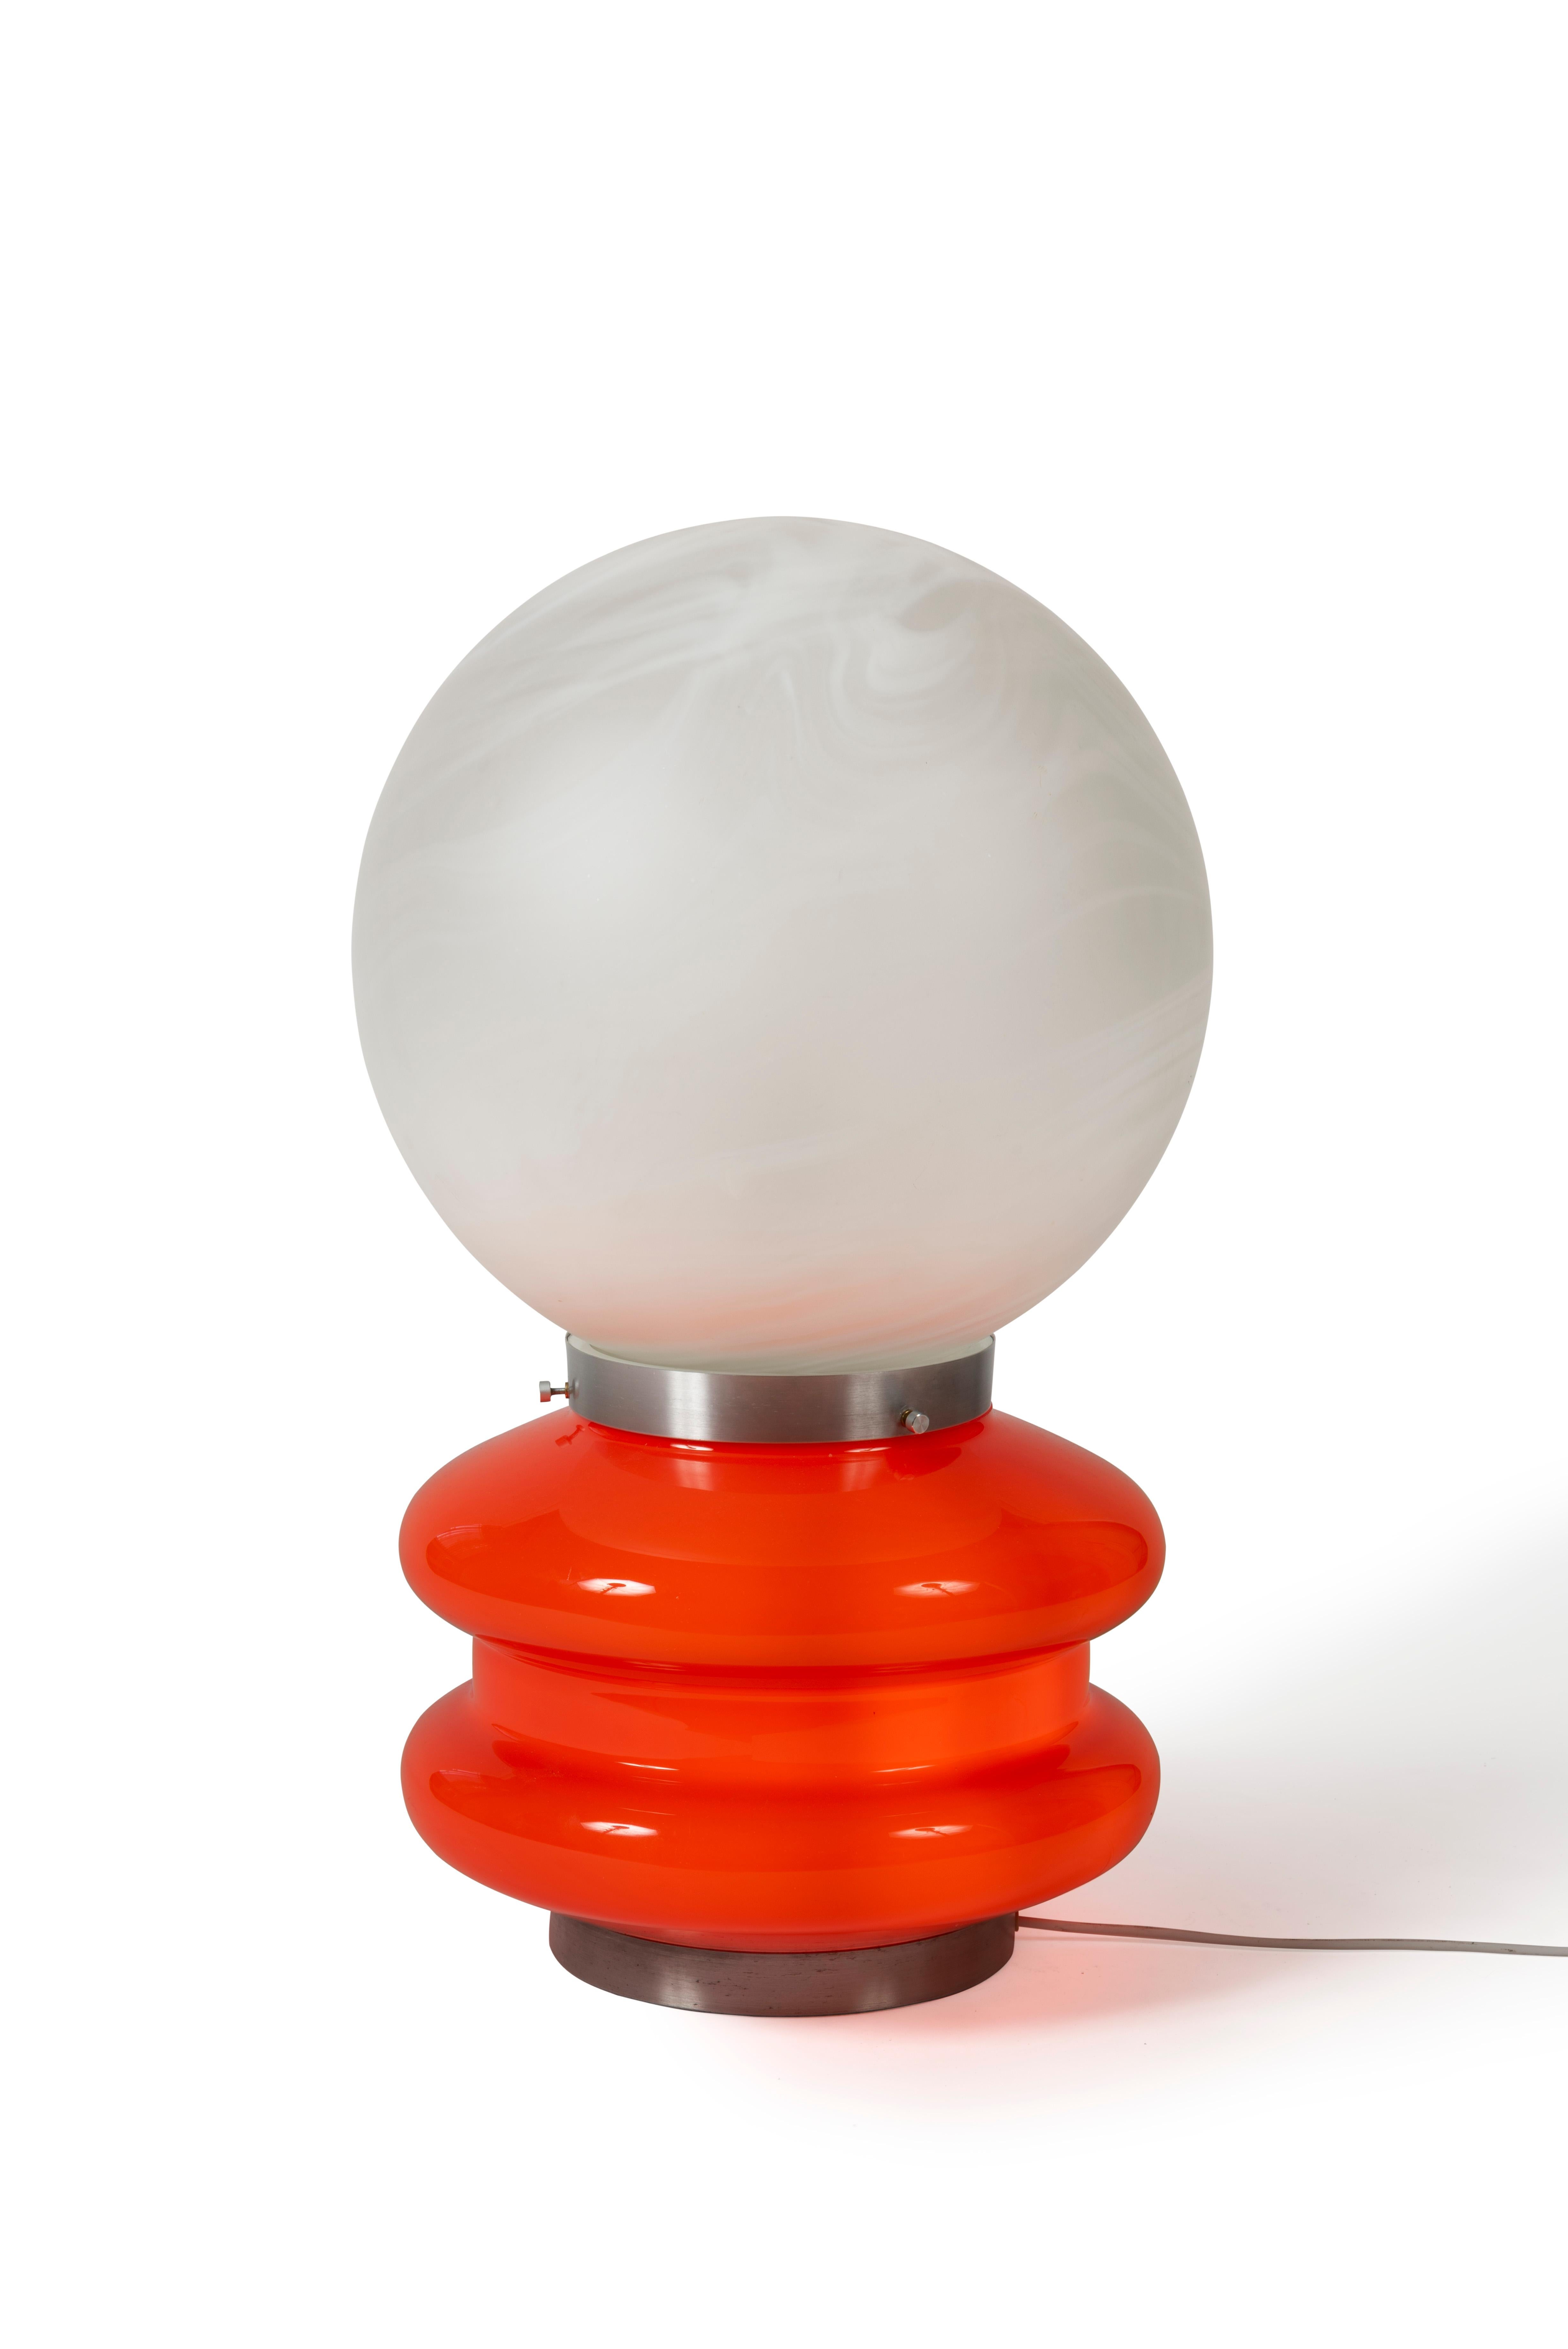 Lampe de table en verre de Murano, dessinée par Carlo Nason, AV Mazzega, Italie, 1970.

En verre opalin blanc, orange et aluminium chromé.

Dimensions : H52xL34xP34cm